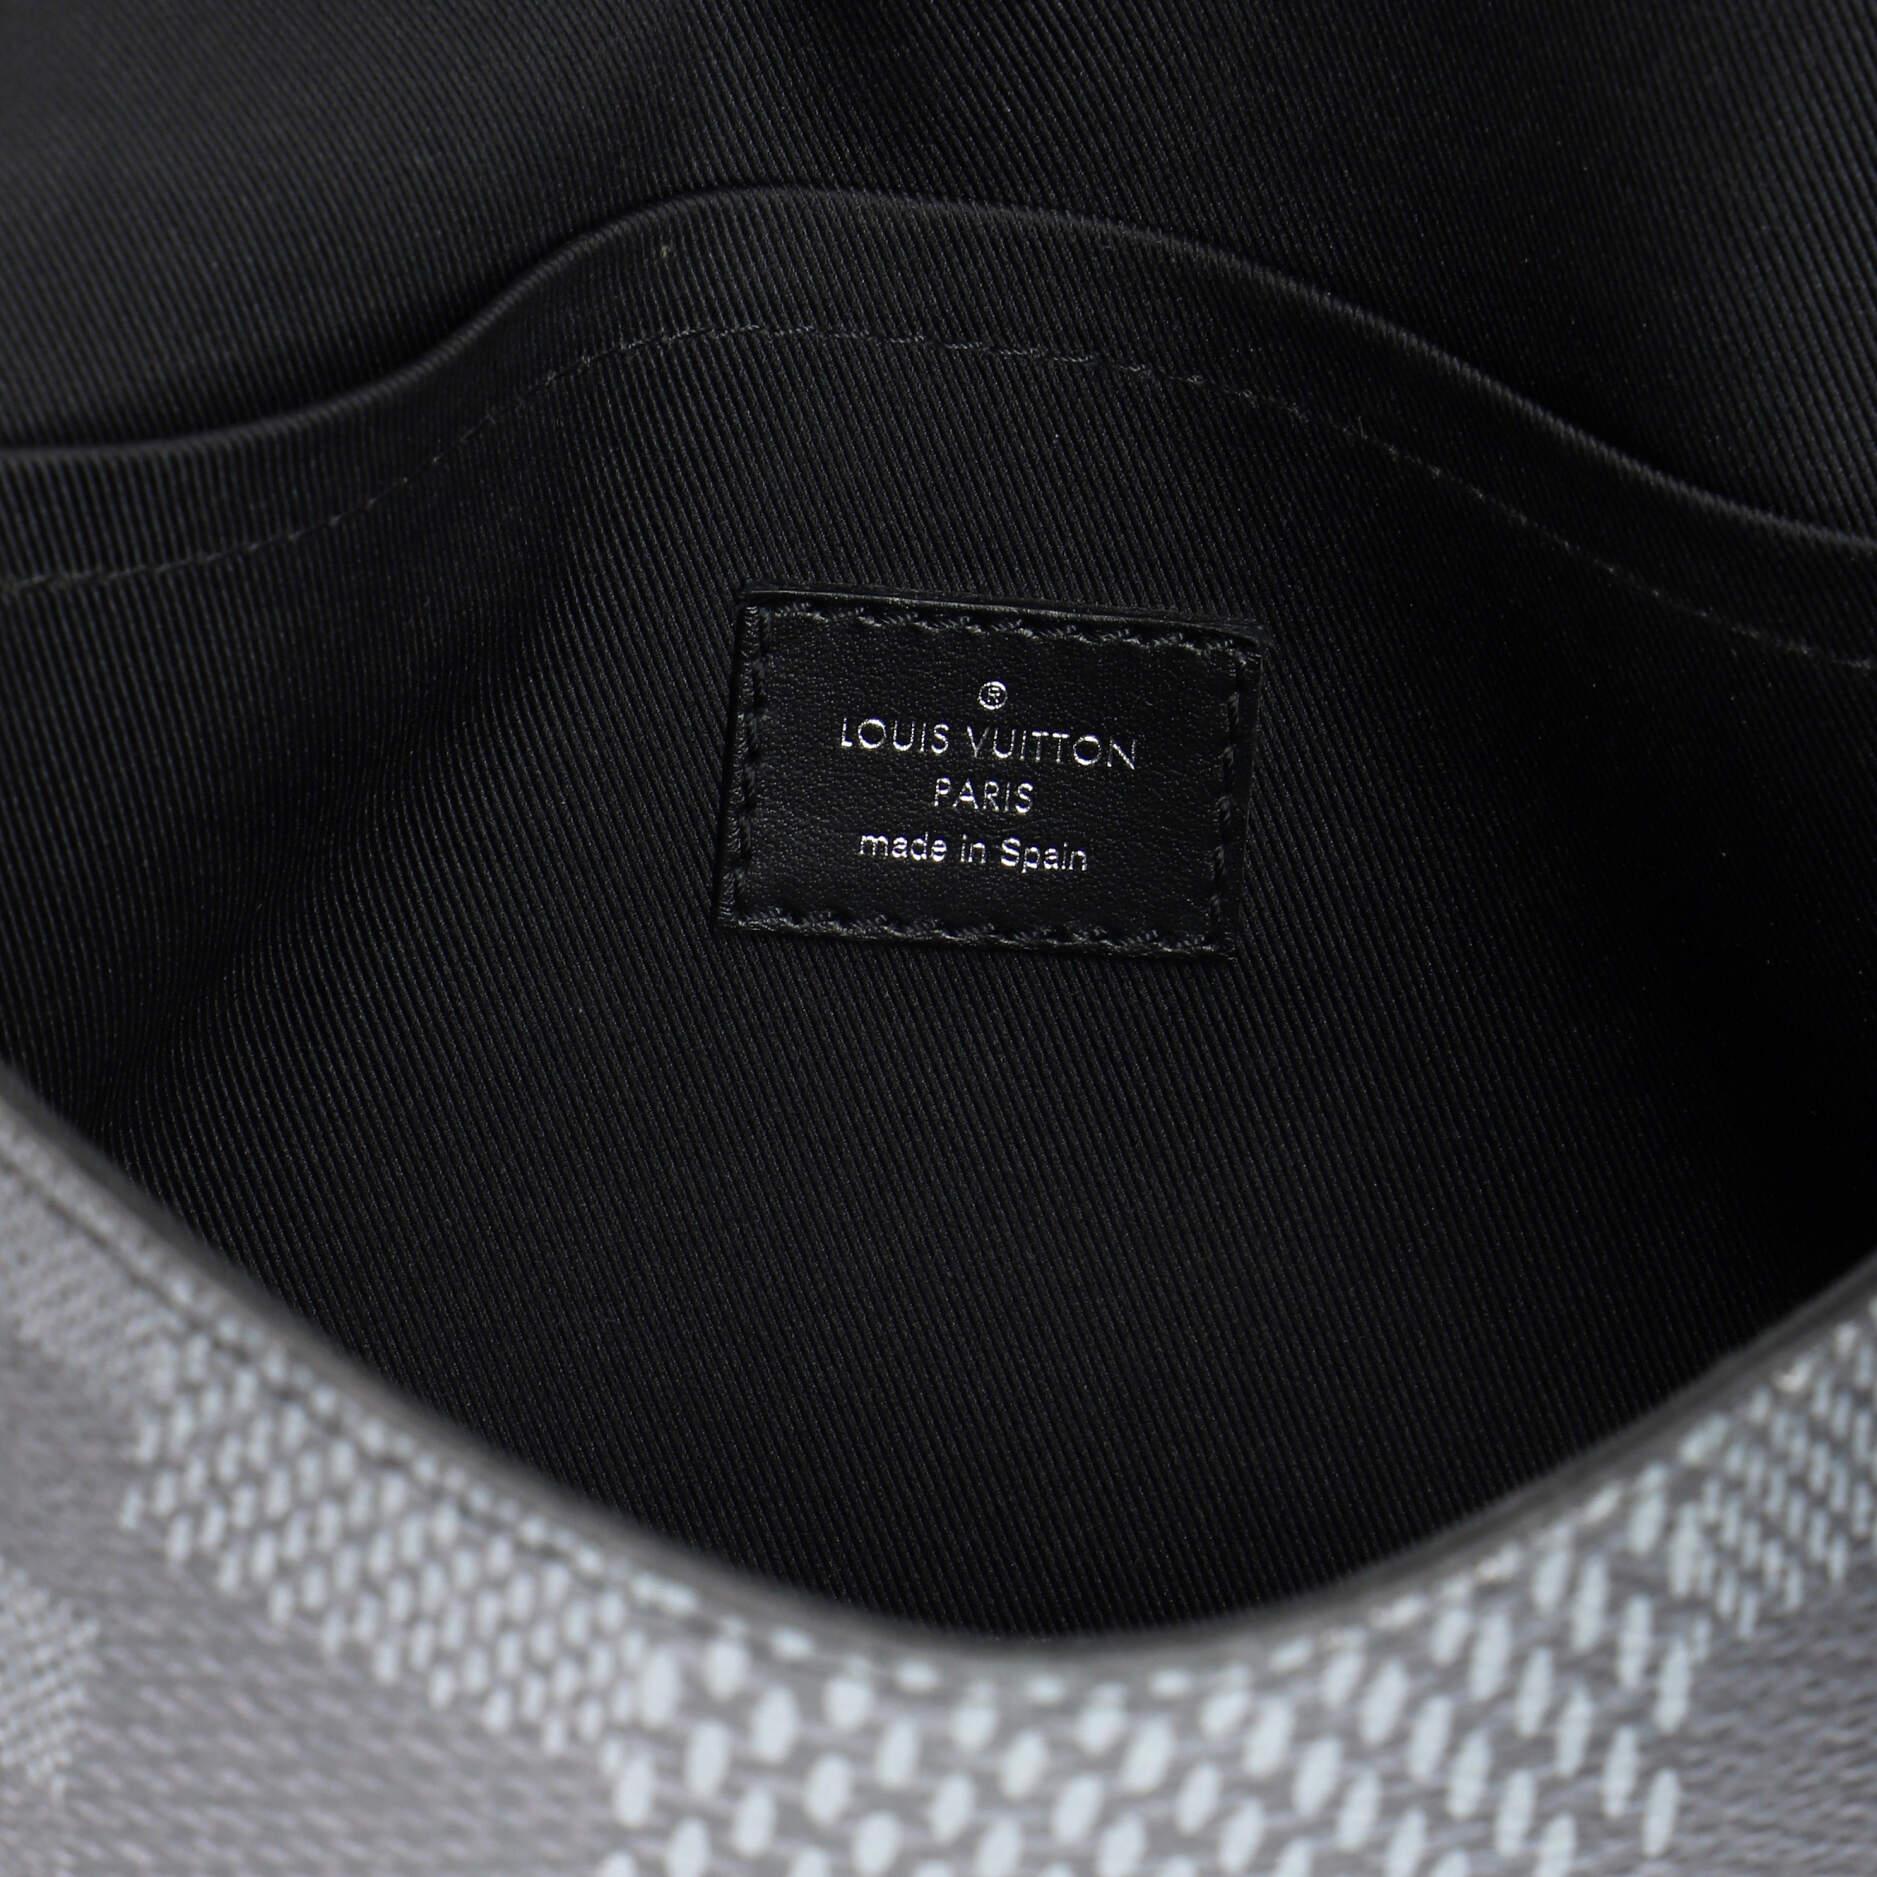 Louis Vuitton Studio Messenger Bag Limited Edition Damier Graphite 3D 4